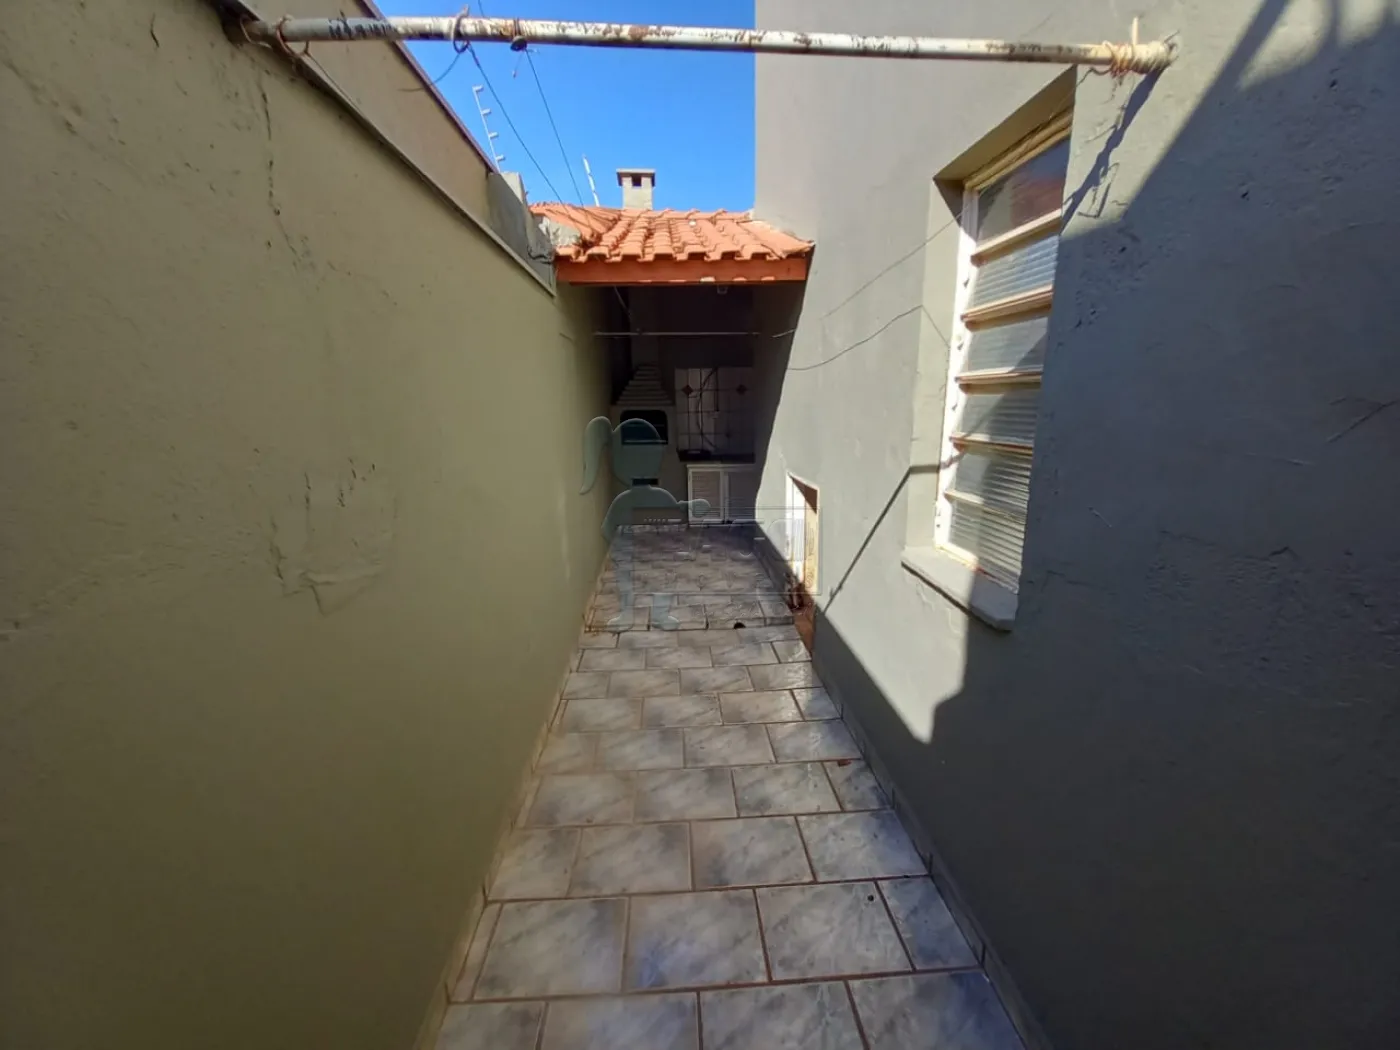 Alugar Casa / Padrão em Ribeirão Preto R$ 2.100,00 - Foto 13